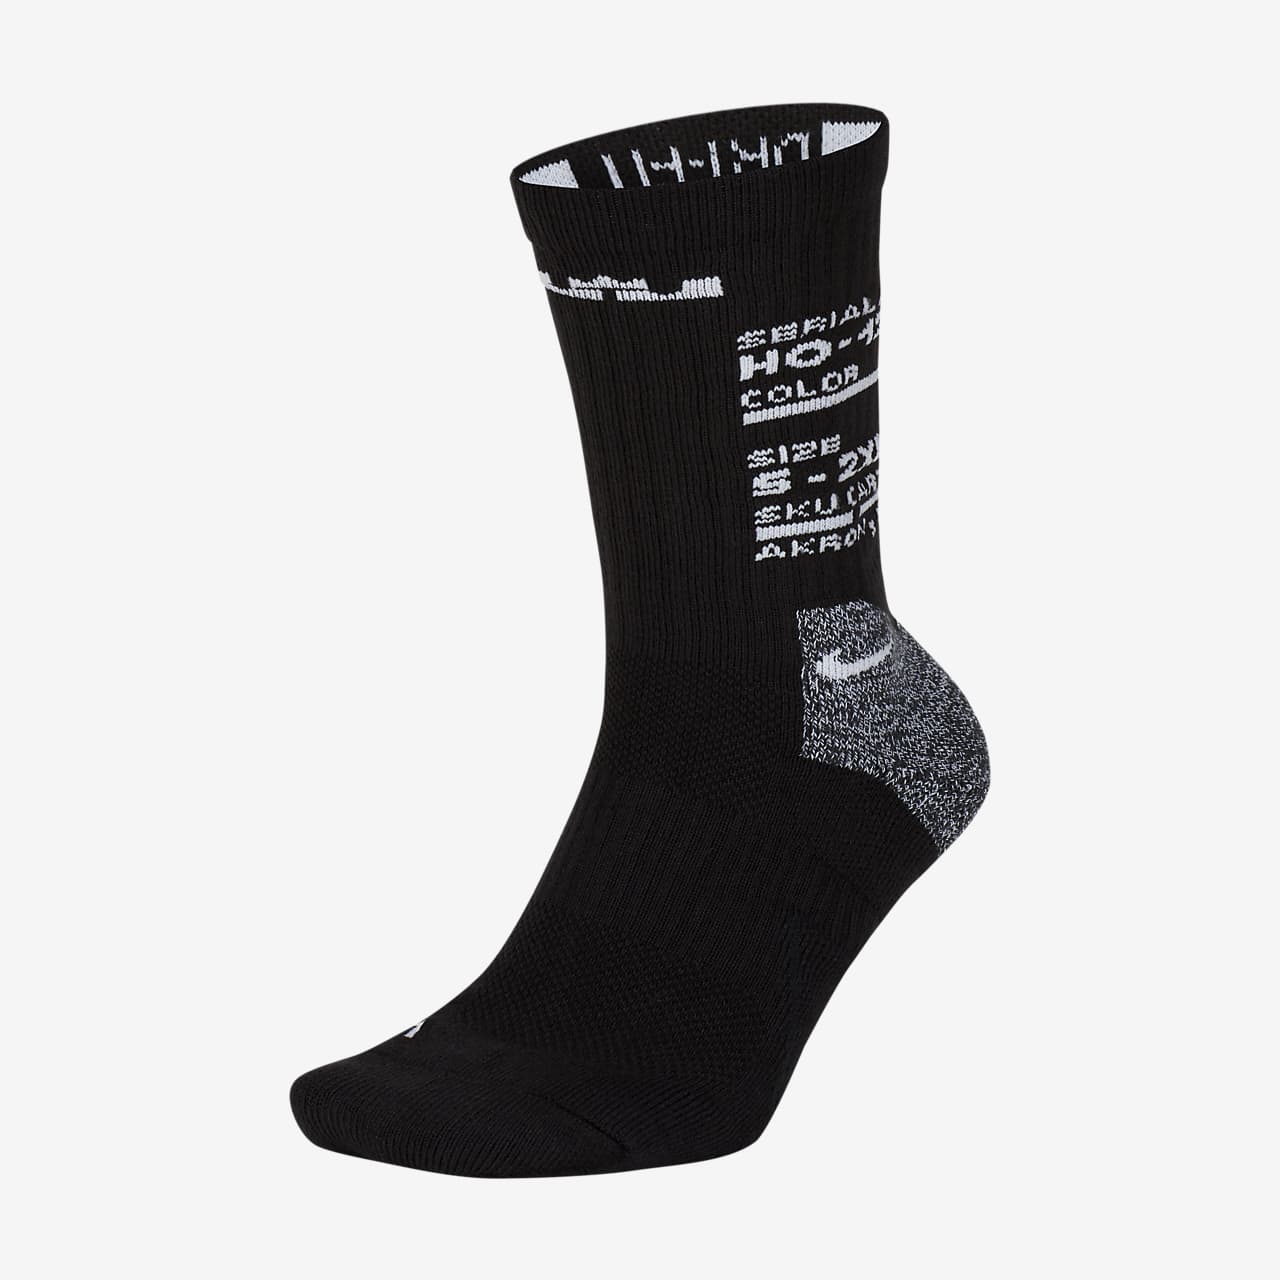 black and white socks nike